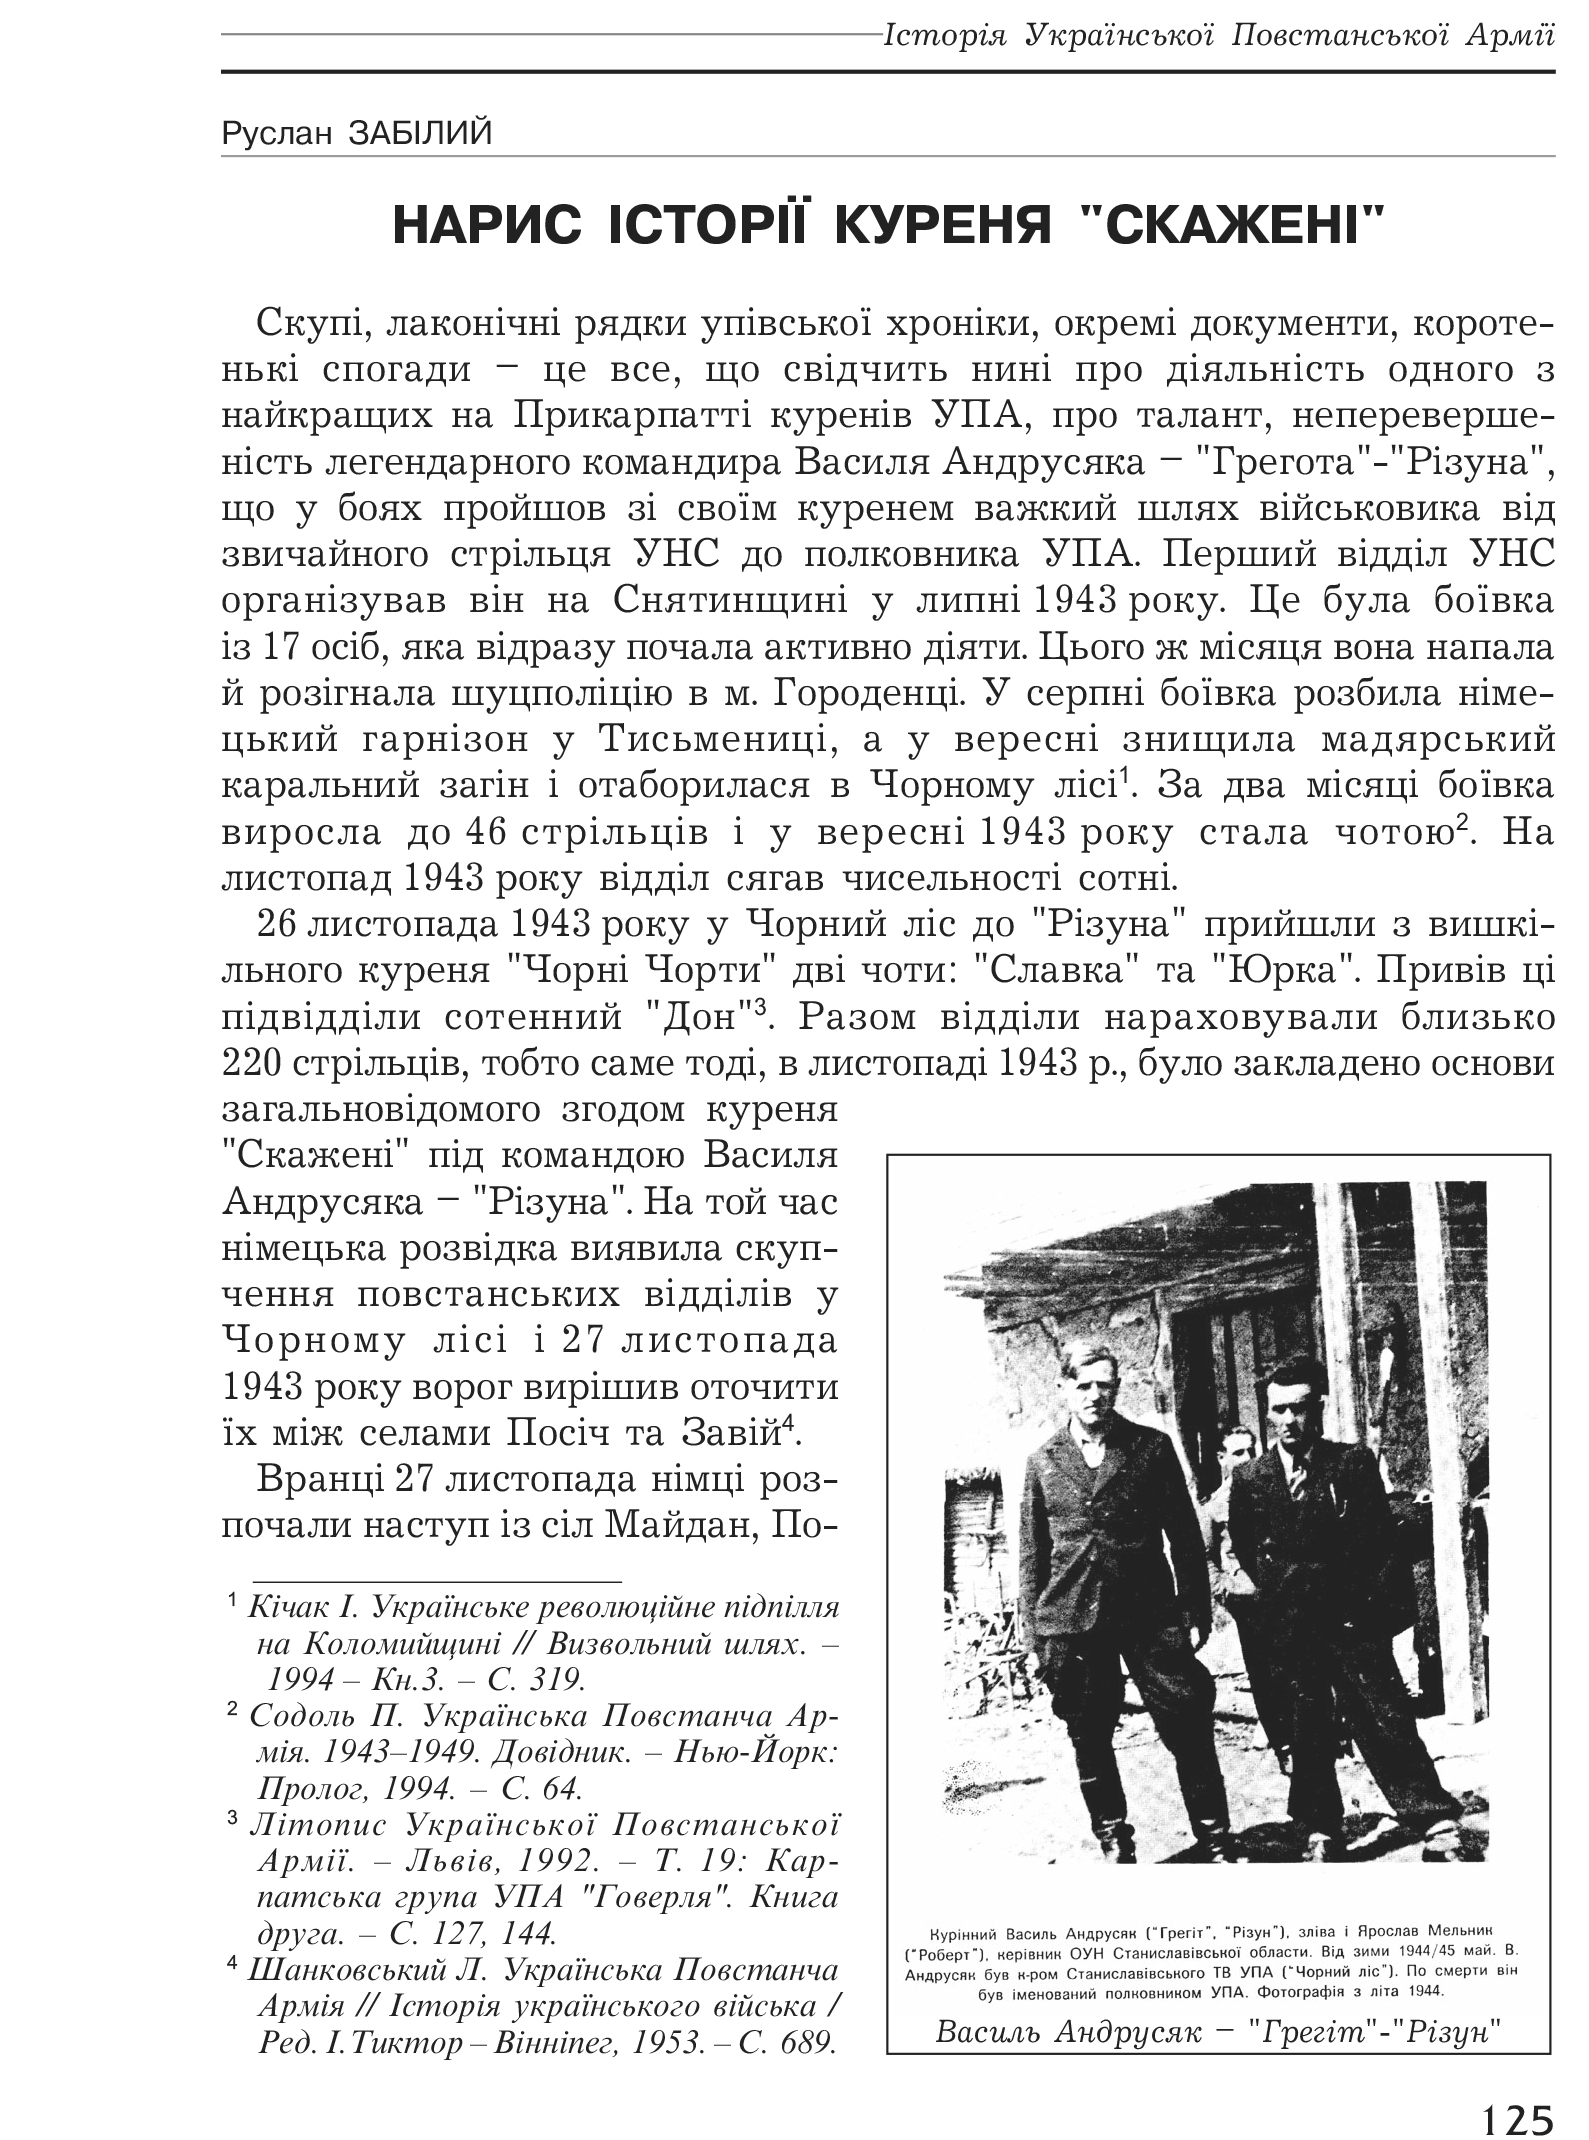 Український визвольний рух №1, ст. 125 - 143